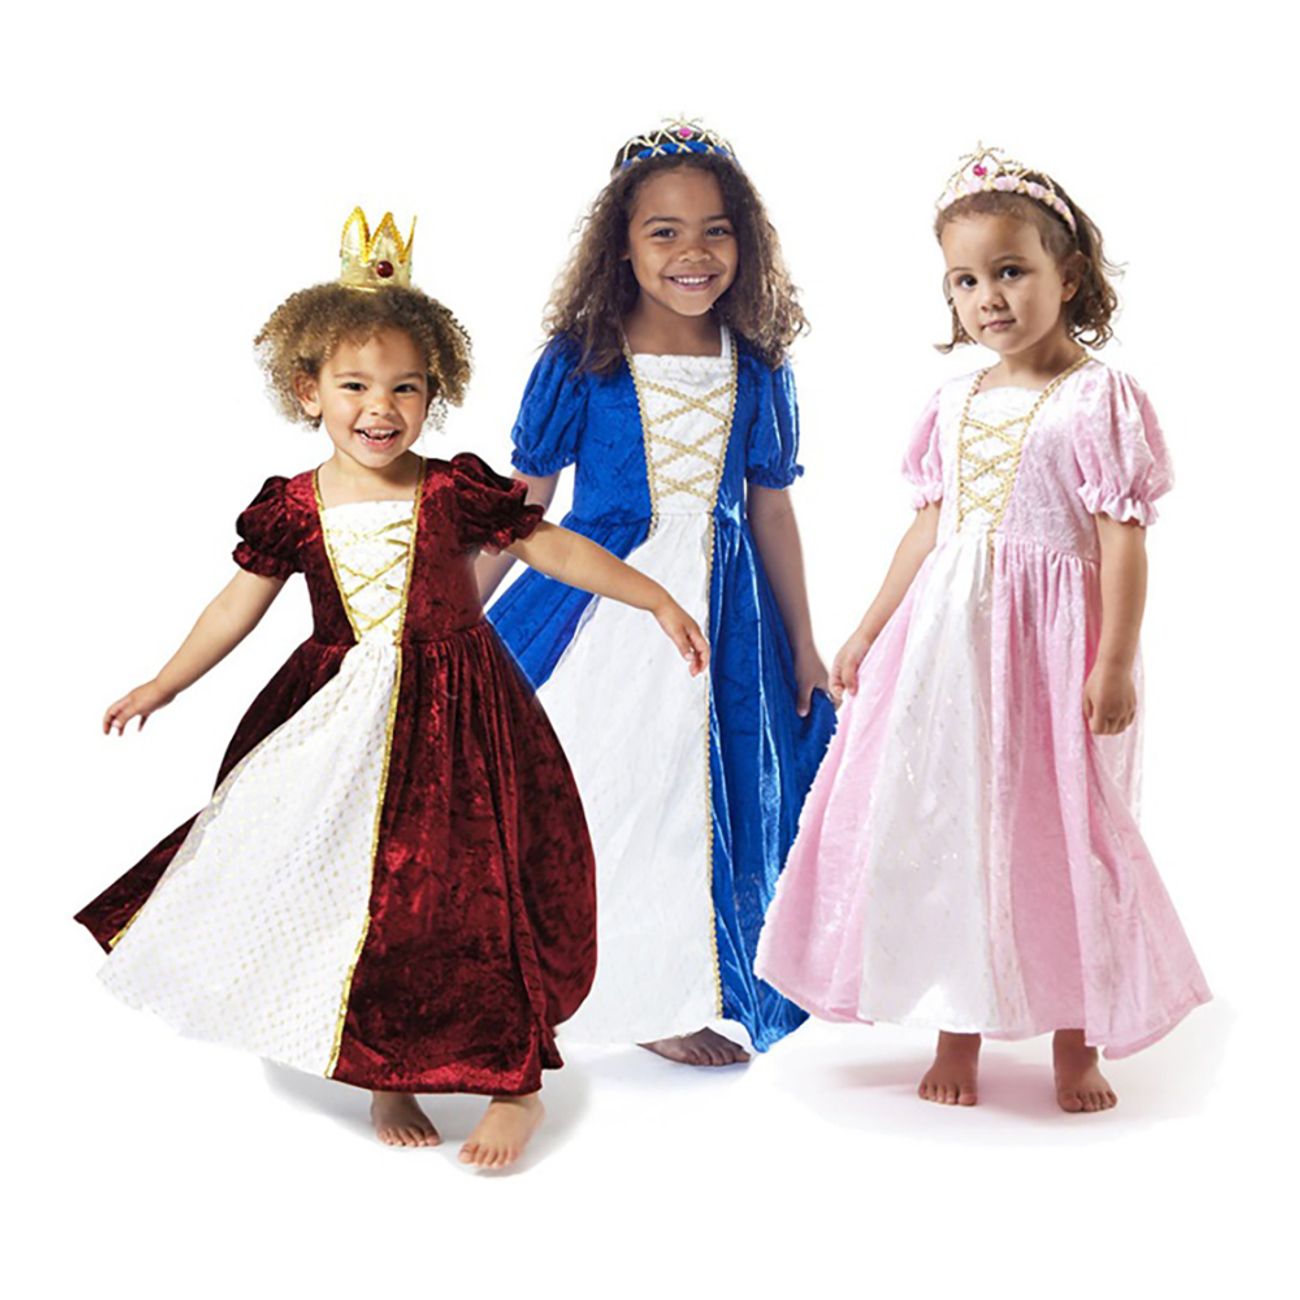 prinsessklanning-sammetsbla-barn-3